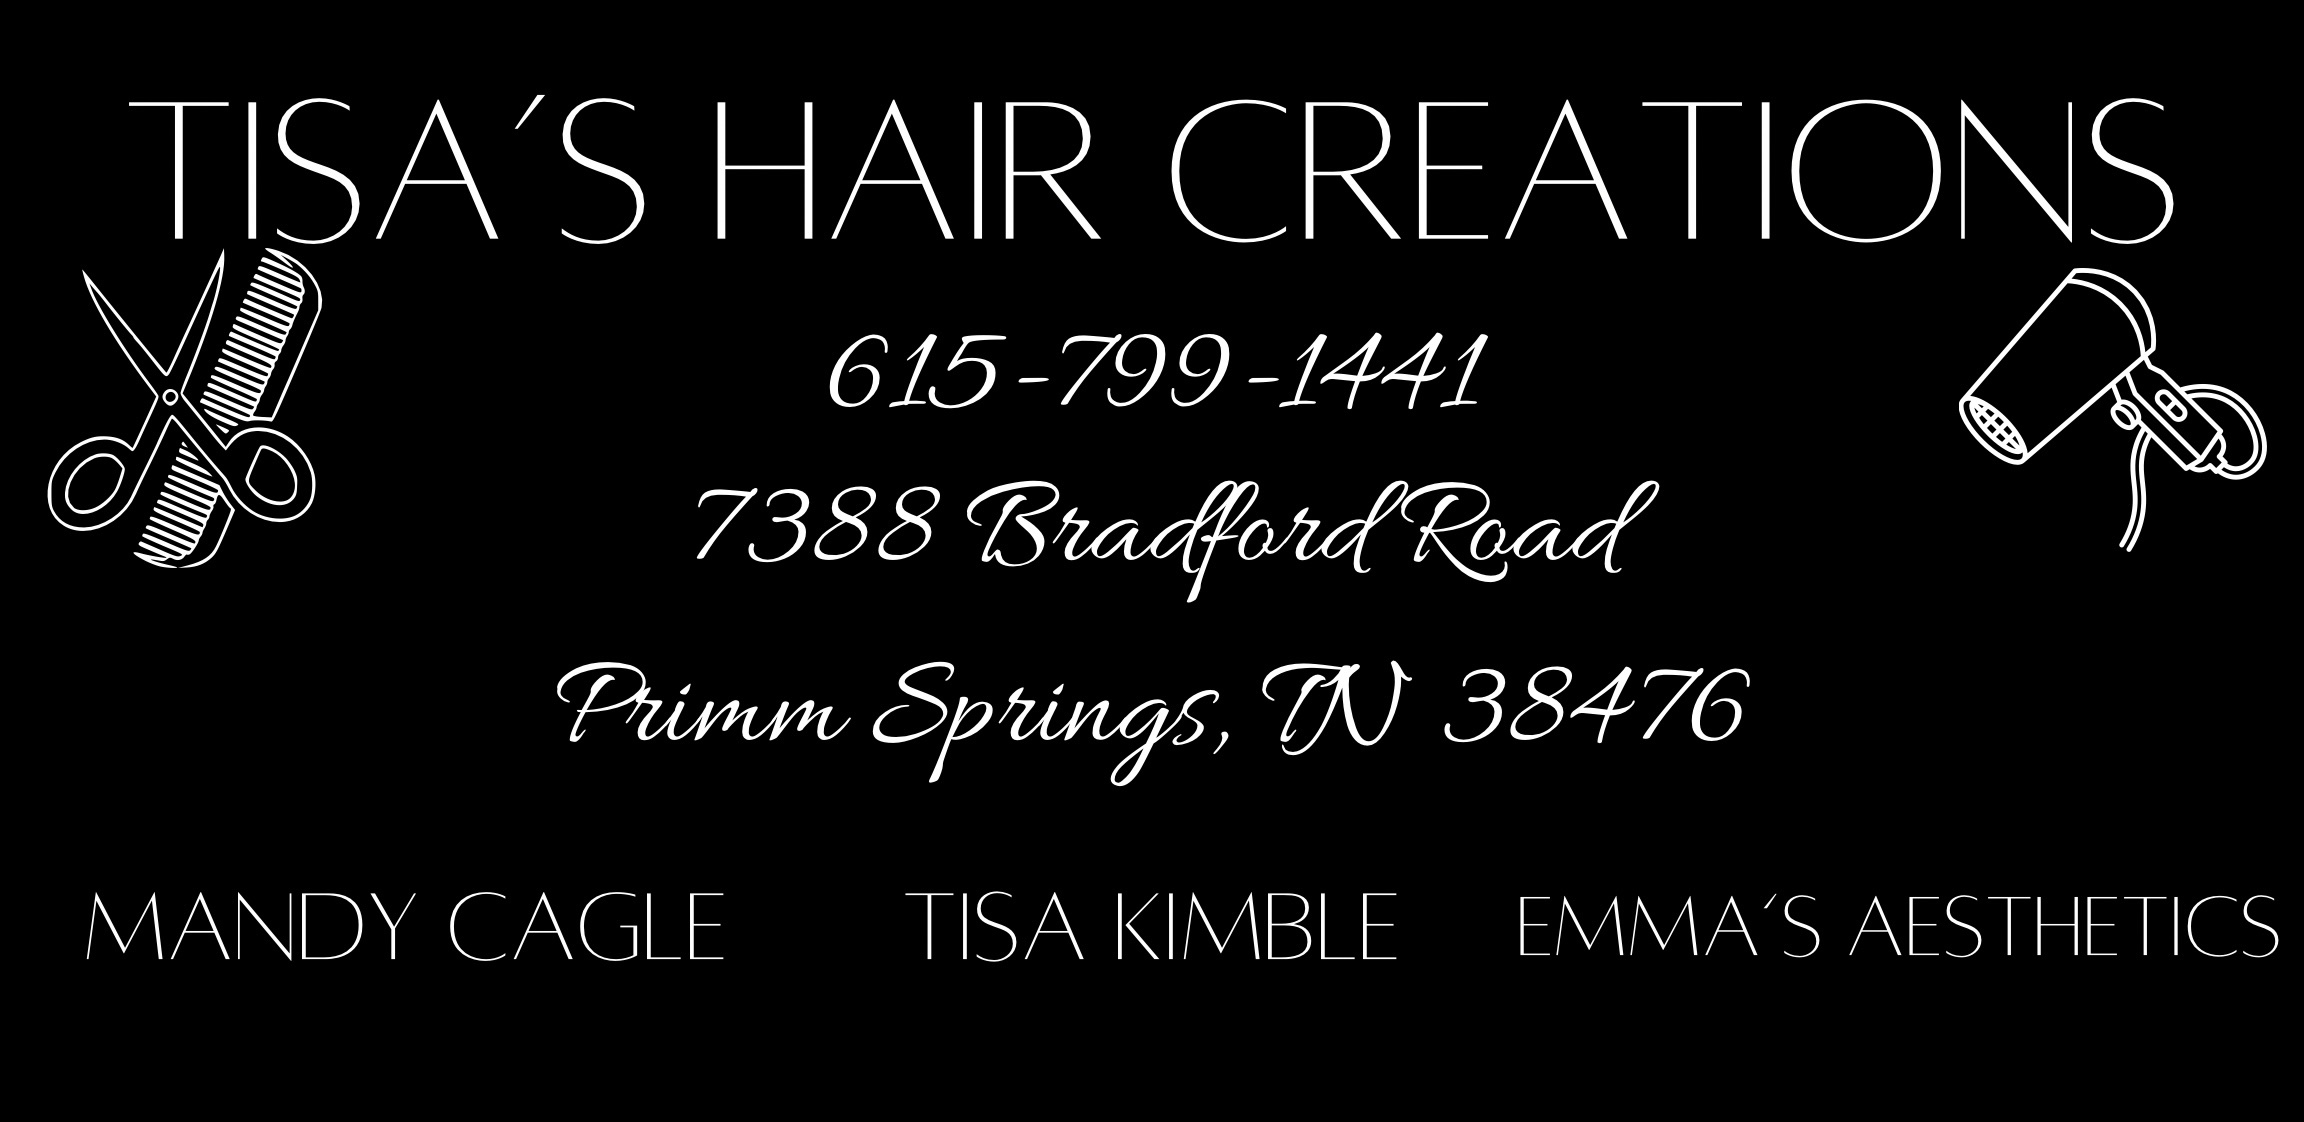 Tisa's Hair Creations 1874 Fairview Blvd E # E, Fairview Tennessee 37062